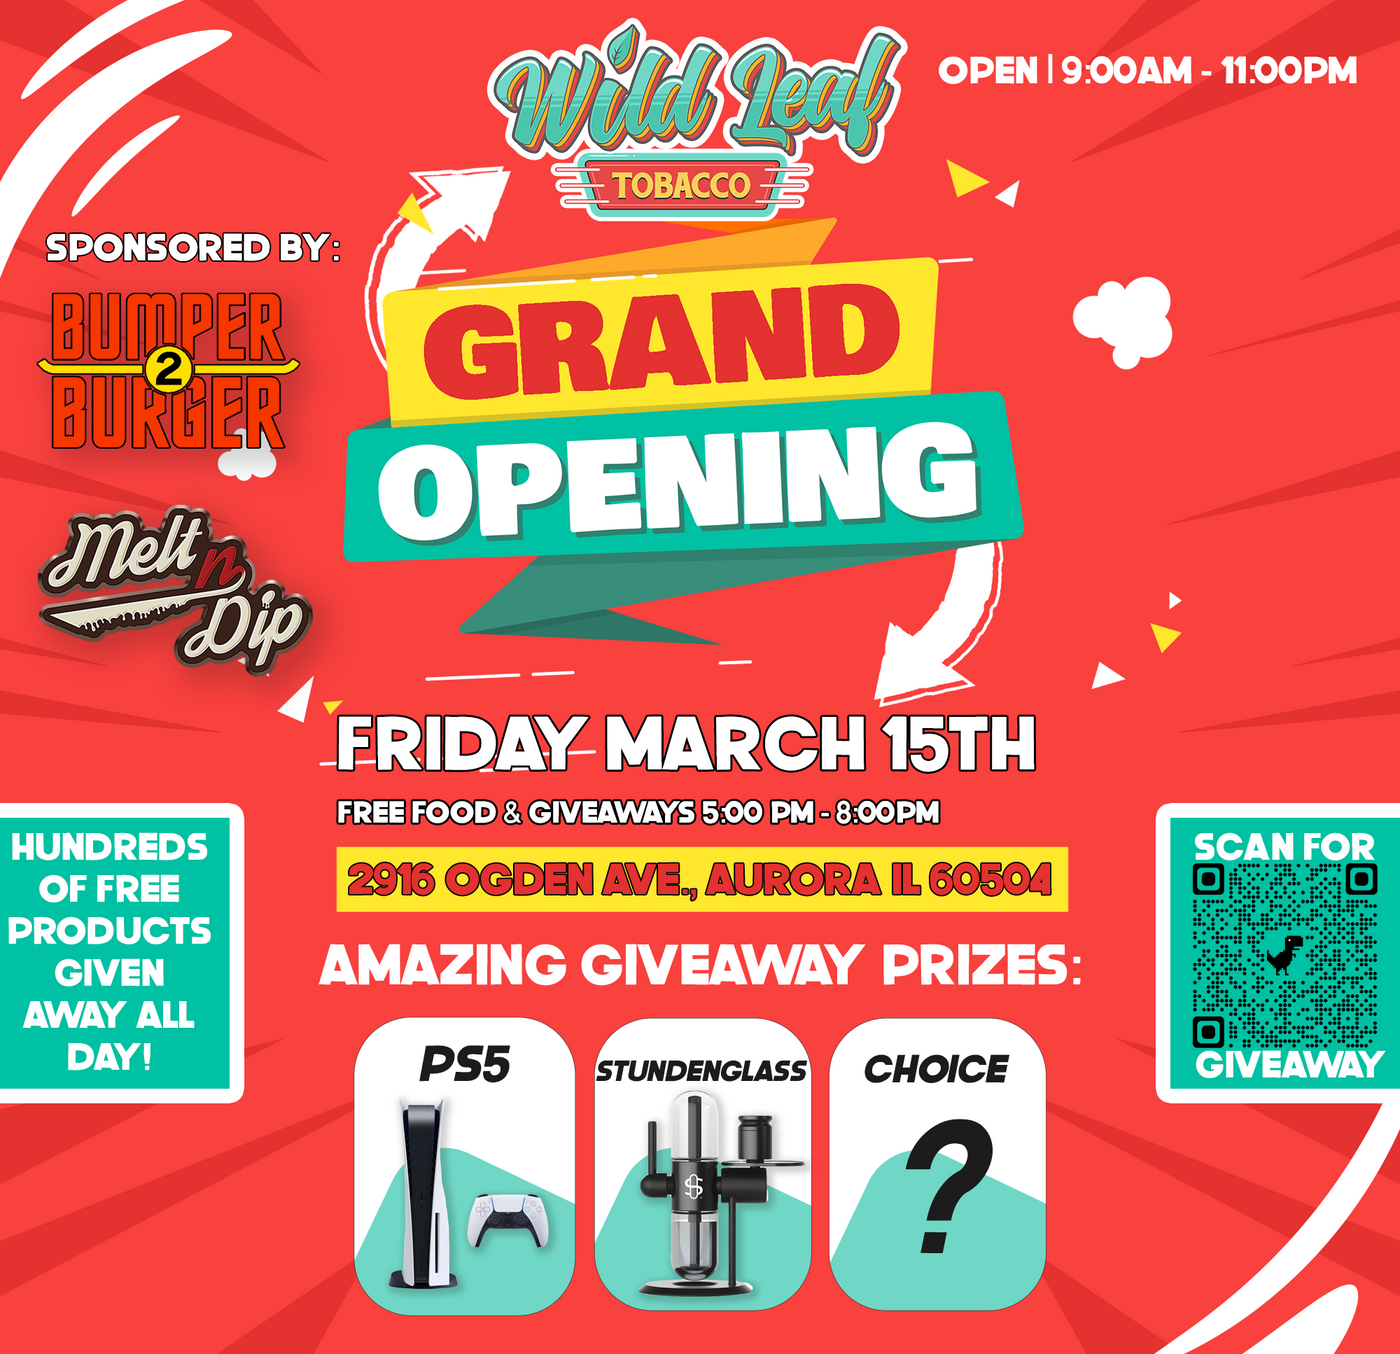 Grand Opening | Wild Leaf Tobacco | 2916 Ogden Ave. Aurora